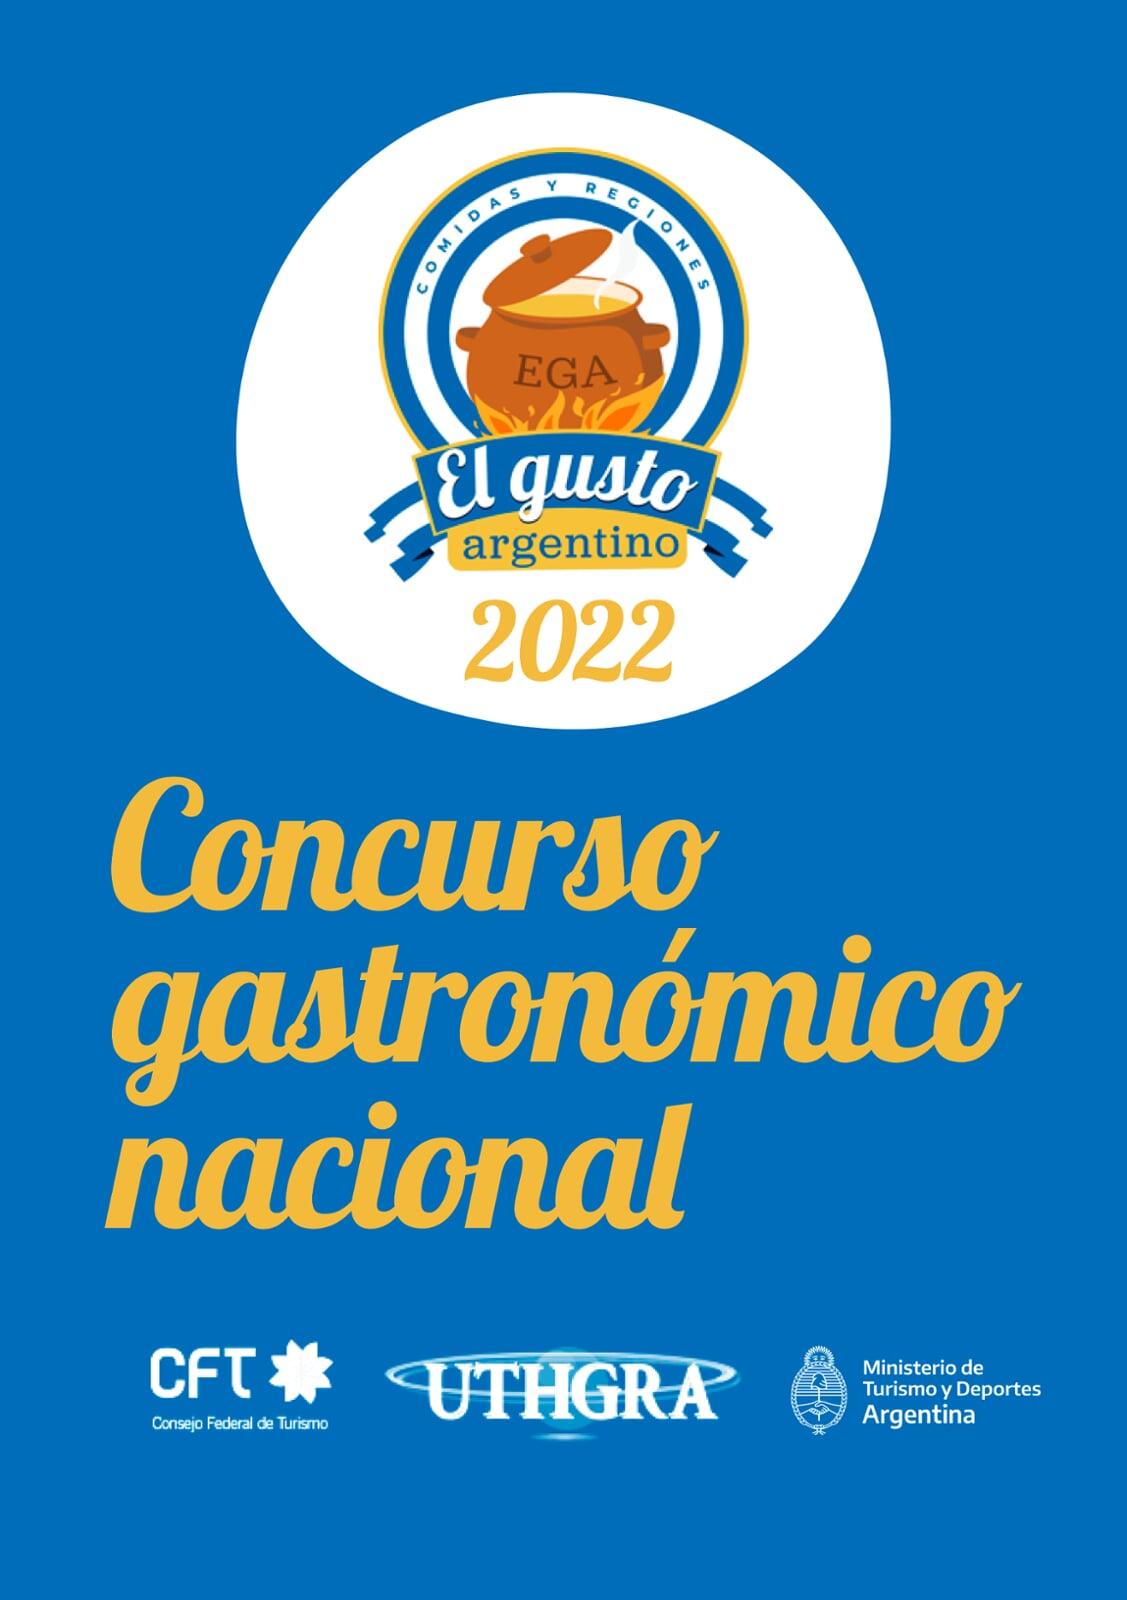 Concurso Gastronómico Nacional